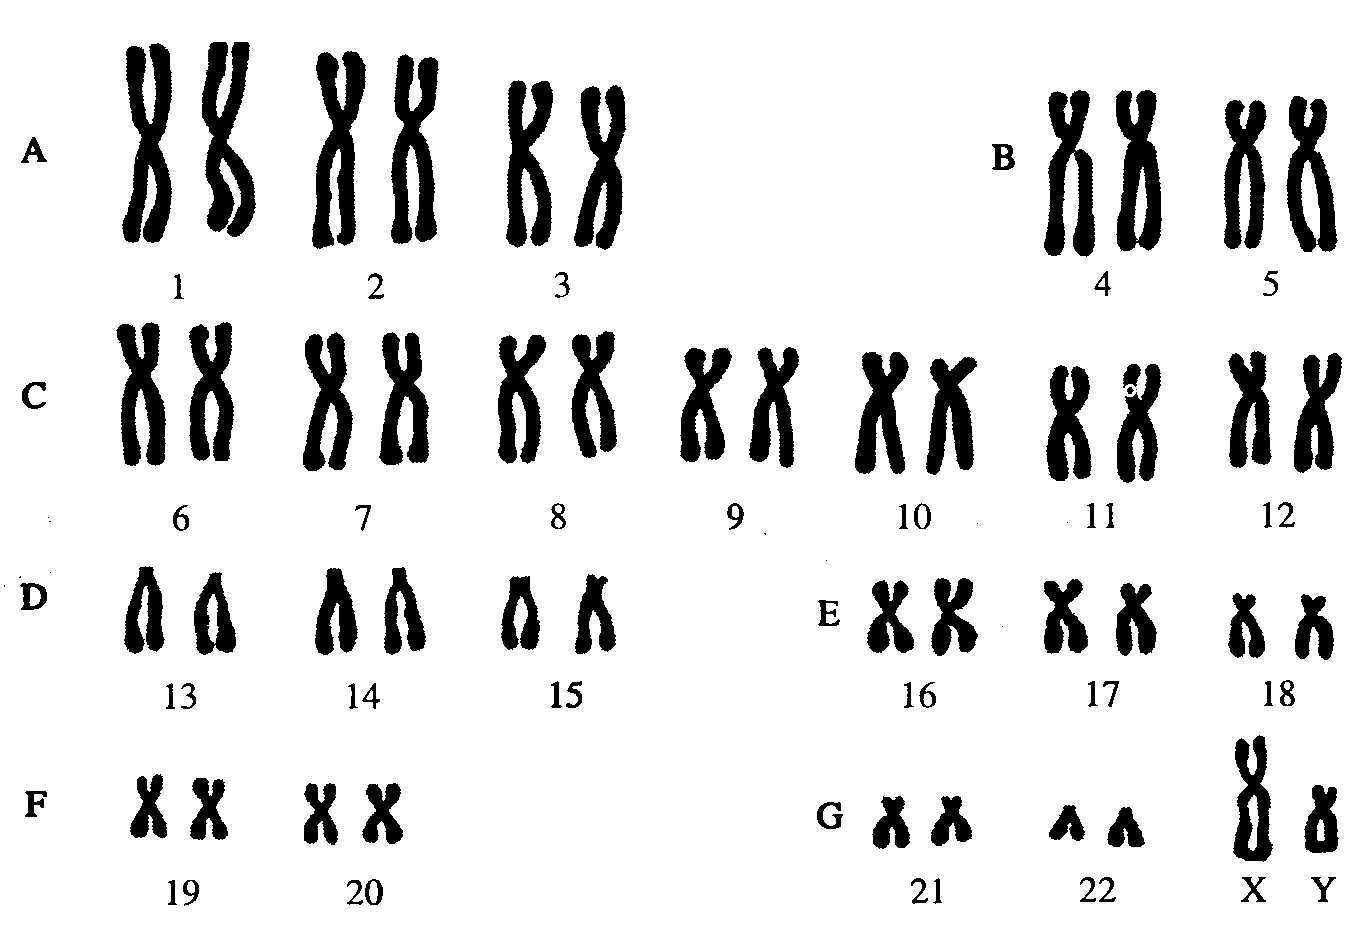 Хромосомный набор клеток мужчин. Кариотип человека Денверская классификация хромосом. Кариотип человека классификация хромосом человека. Нормальный кариотип человека 46 хромосом. Кариограмма хромосом здорового человека.